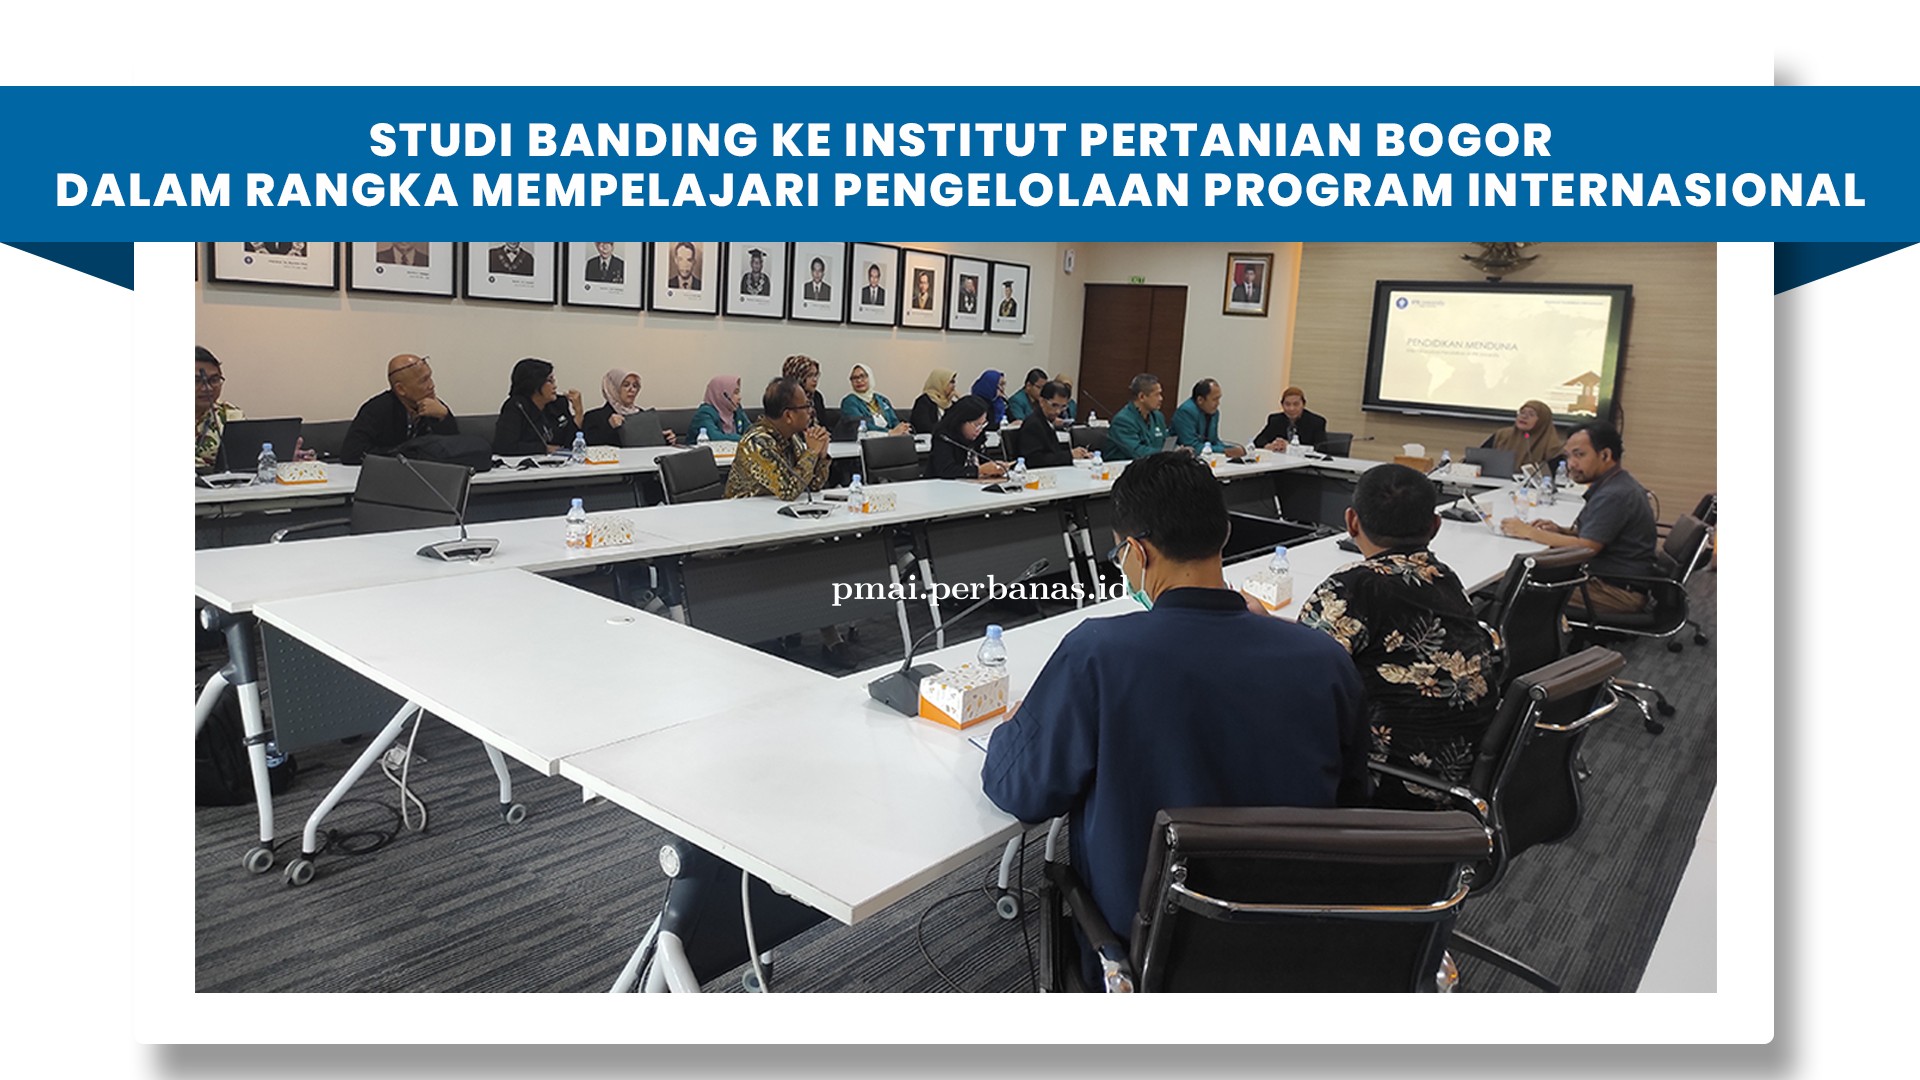 Studi Banding ke Institut Pertanian Bogor dalam Rangka Mempelajari Pengelolaan Program Internasional